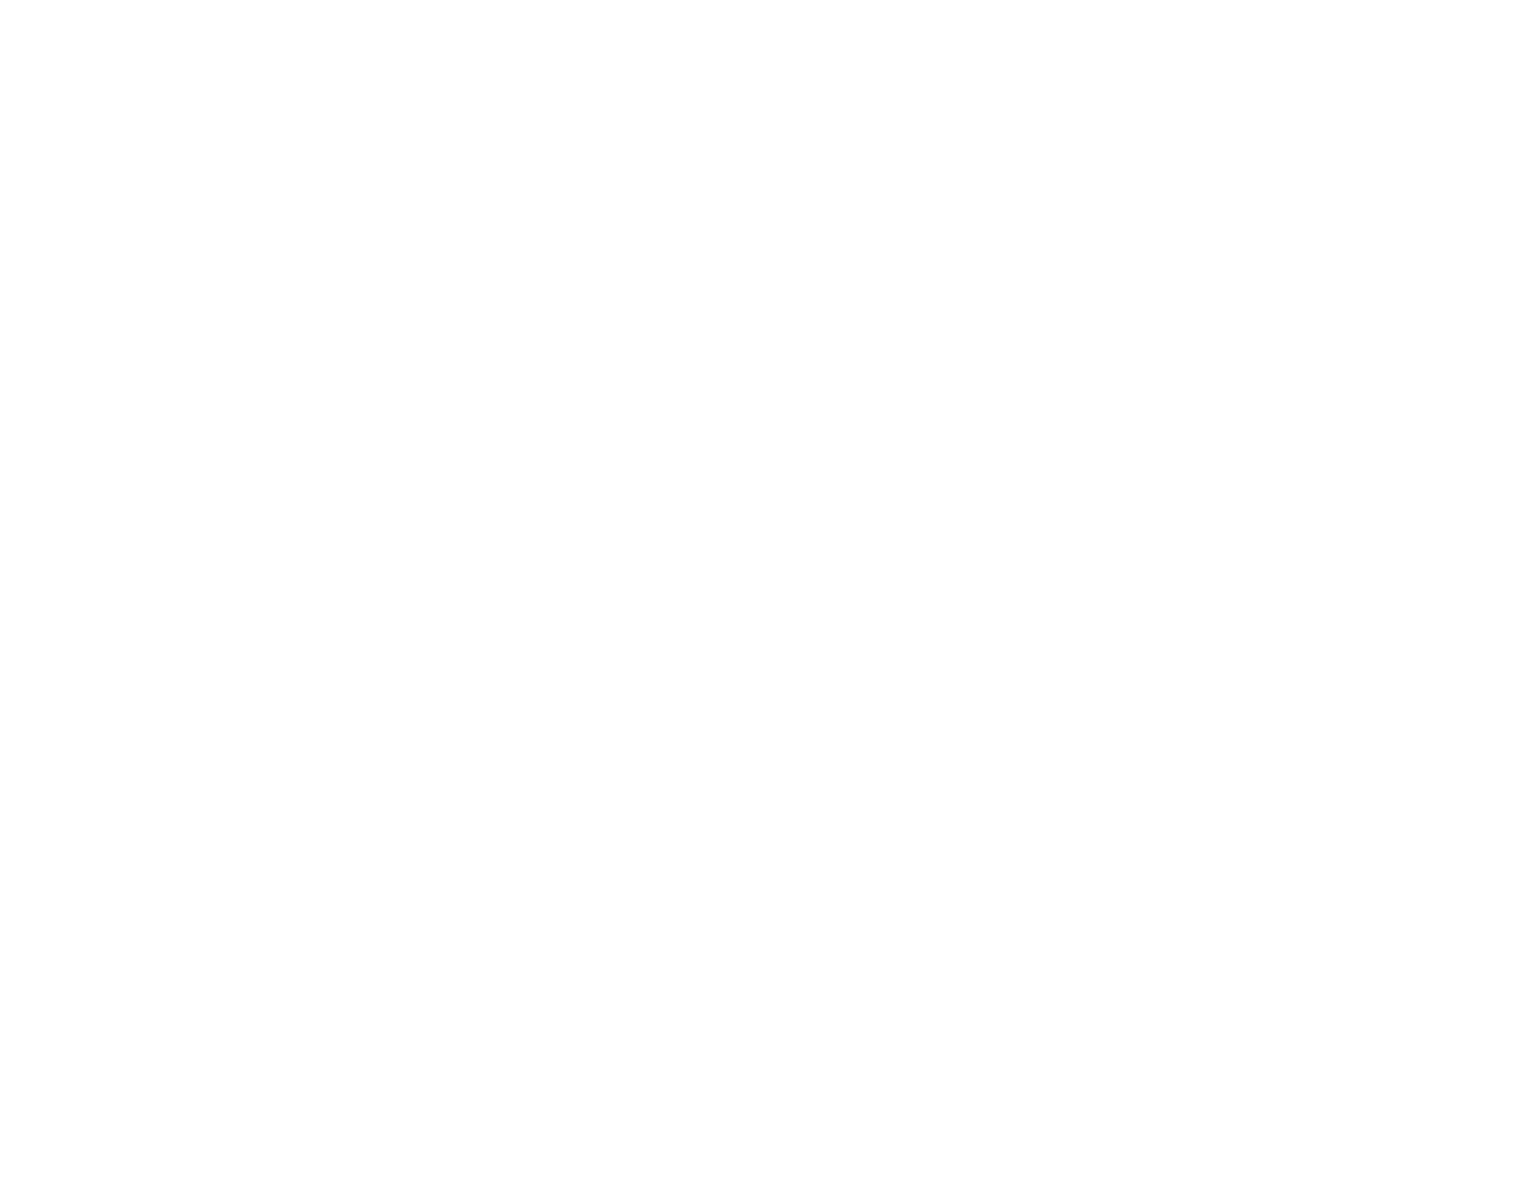 Mediobanca logo for dark backgrounds (transparent PNG)